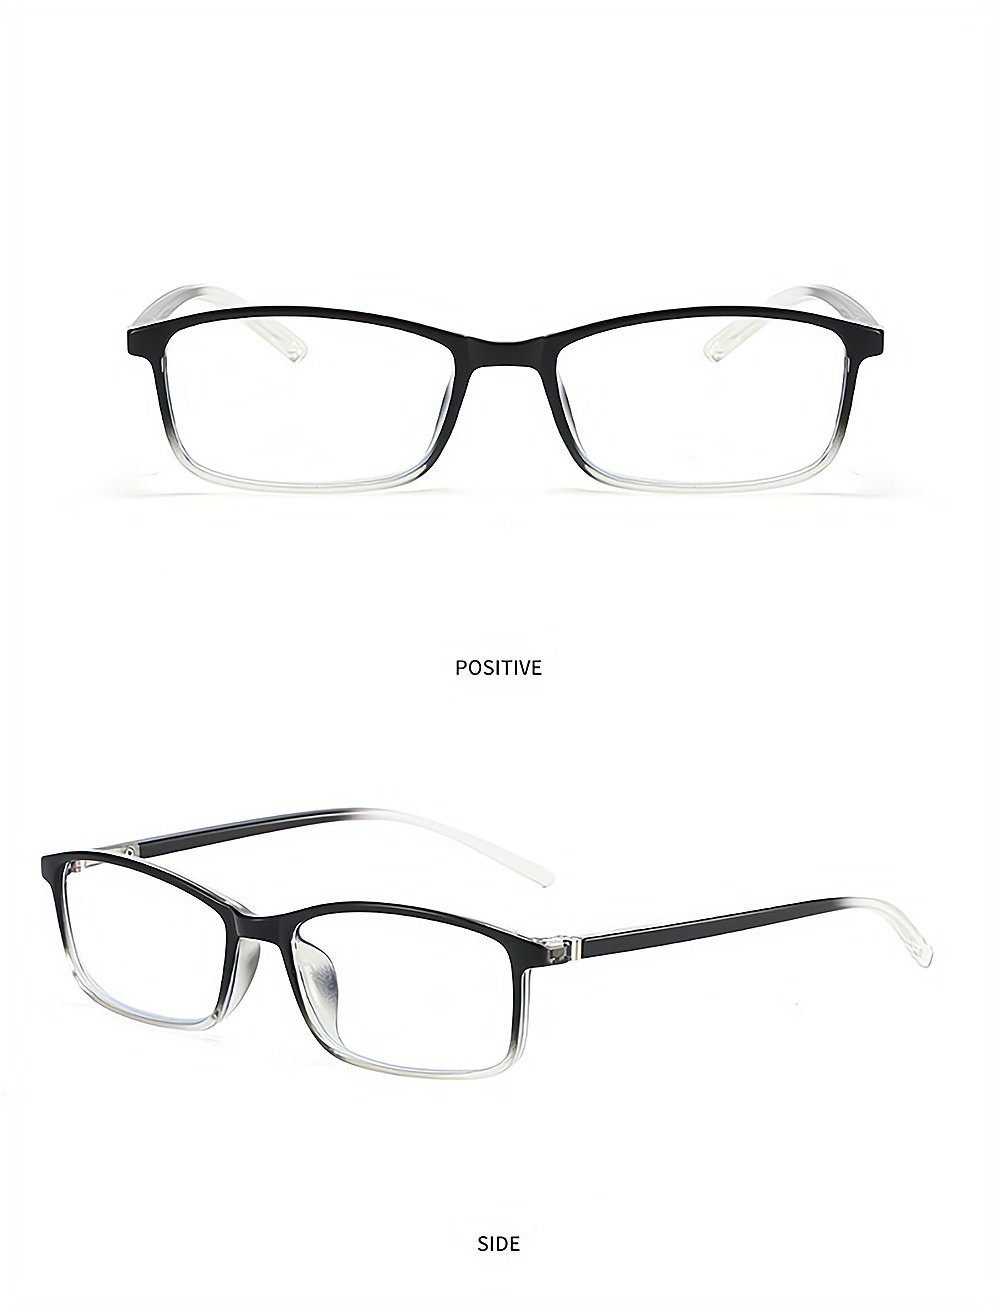 PACIEA Lesebrille Mode bedruckte Rahmen anti blaue presbyopische Gläser weiß